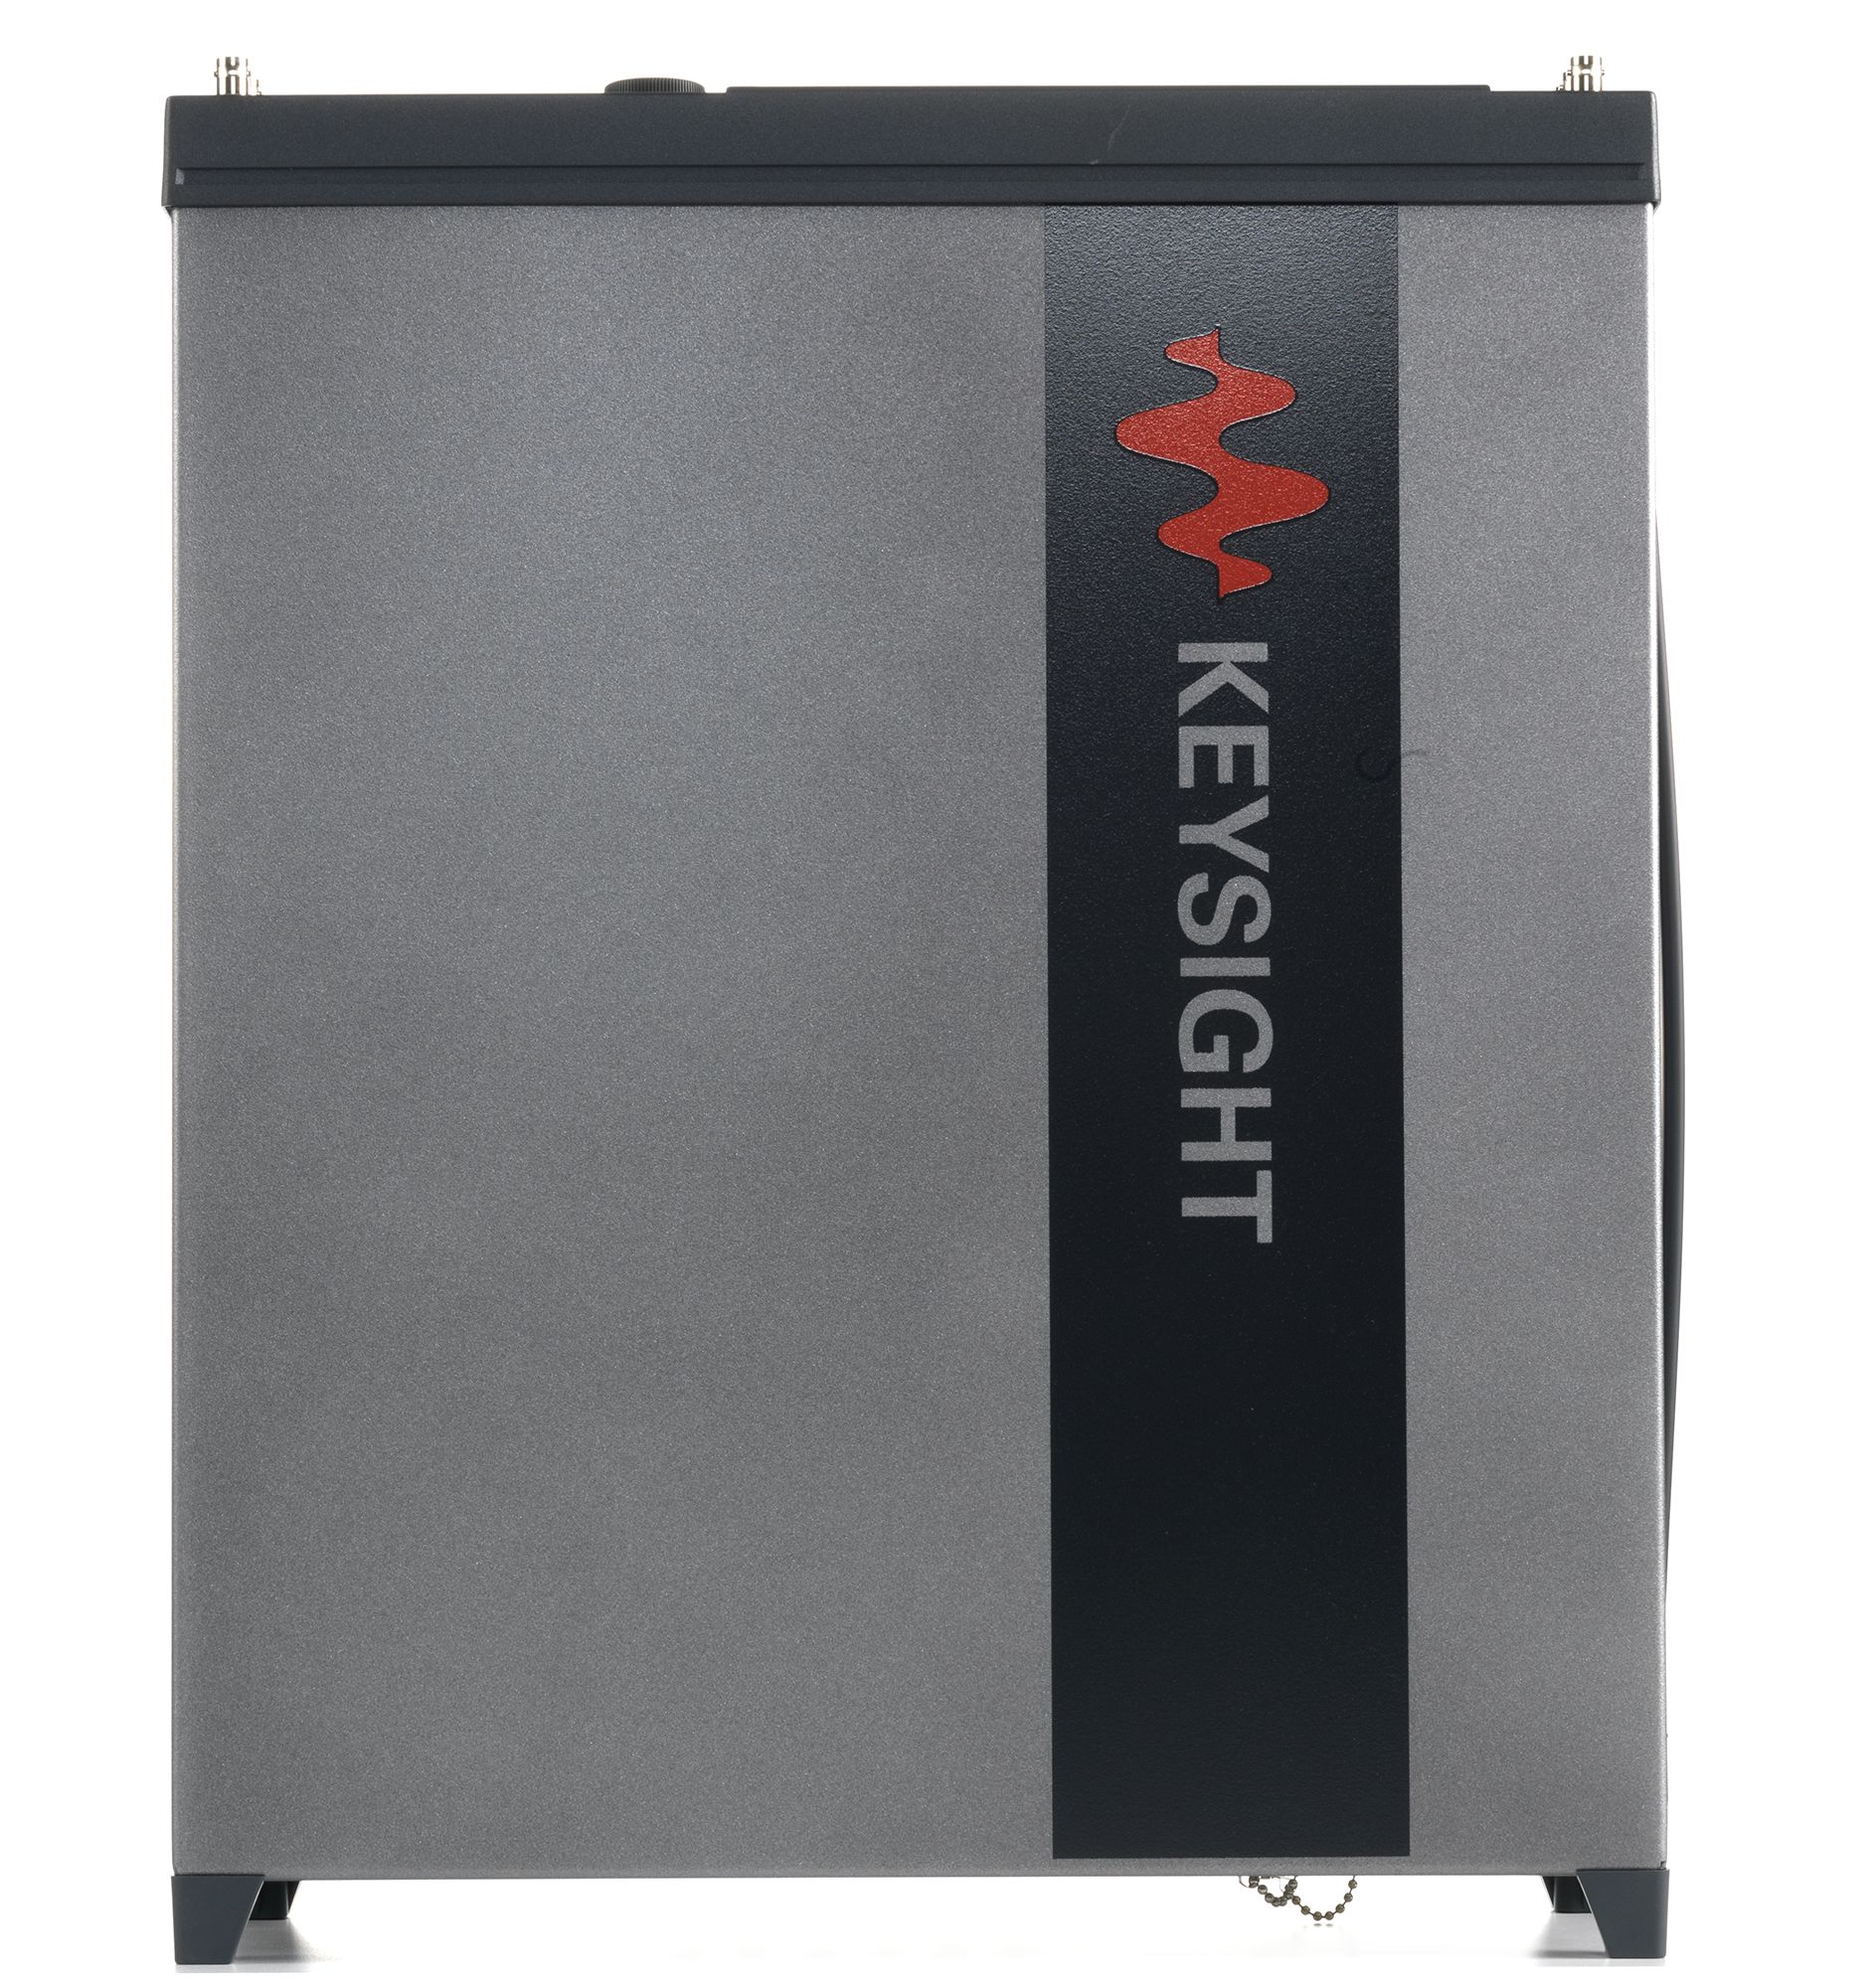 Keysight E8267D-520 250 kHz to 20 GHz